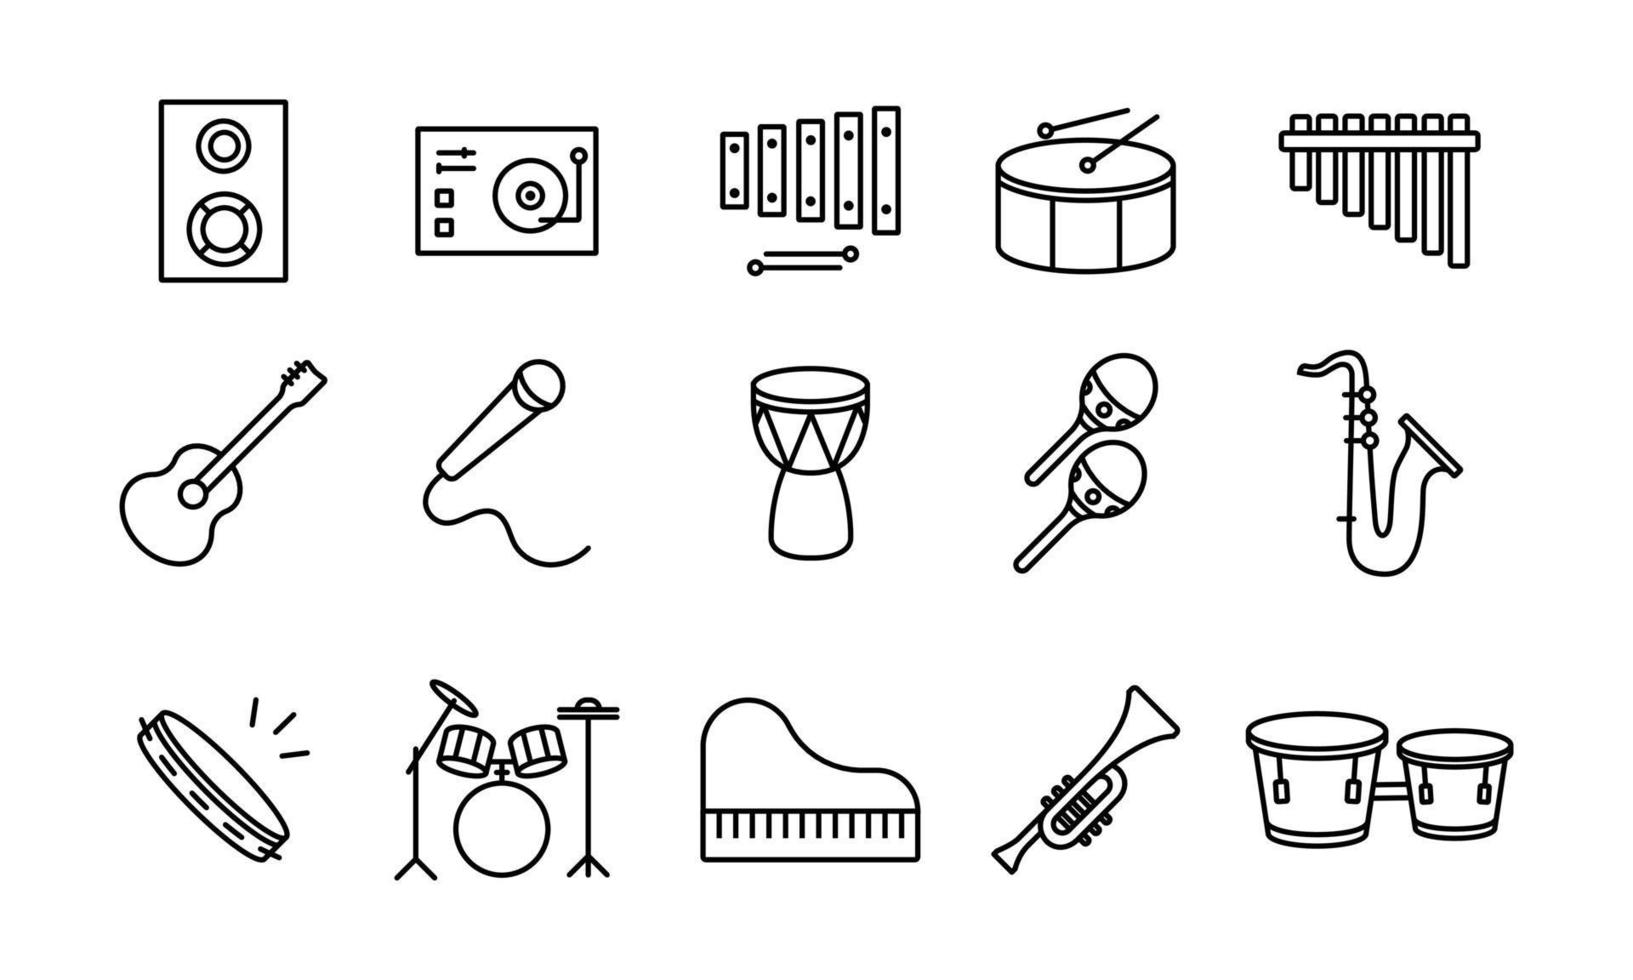 la colección de iconos de líneas de trazos editables relacionados con instrumentos musicales. una guitarra, piano, djembe, etc.que sea adecuado para ser utilizado como diseño de elementos ui ux. vector